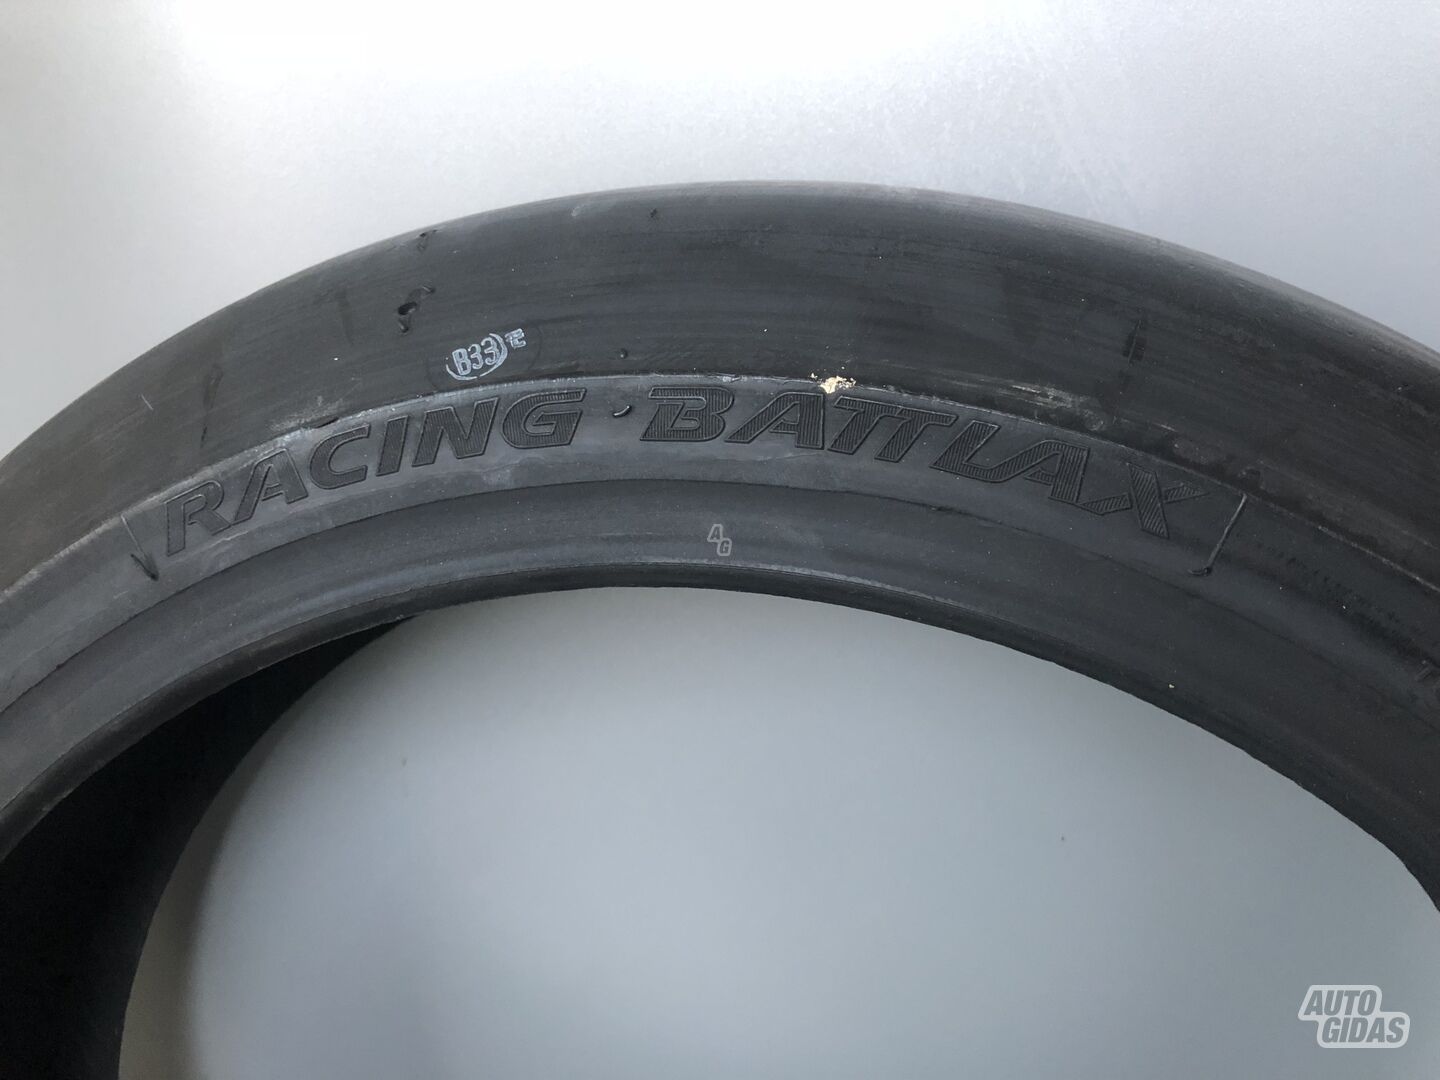 Bridgestone Slikas R17 summer tyres motorcycles